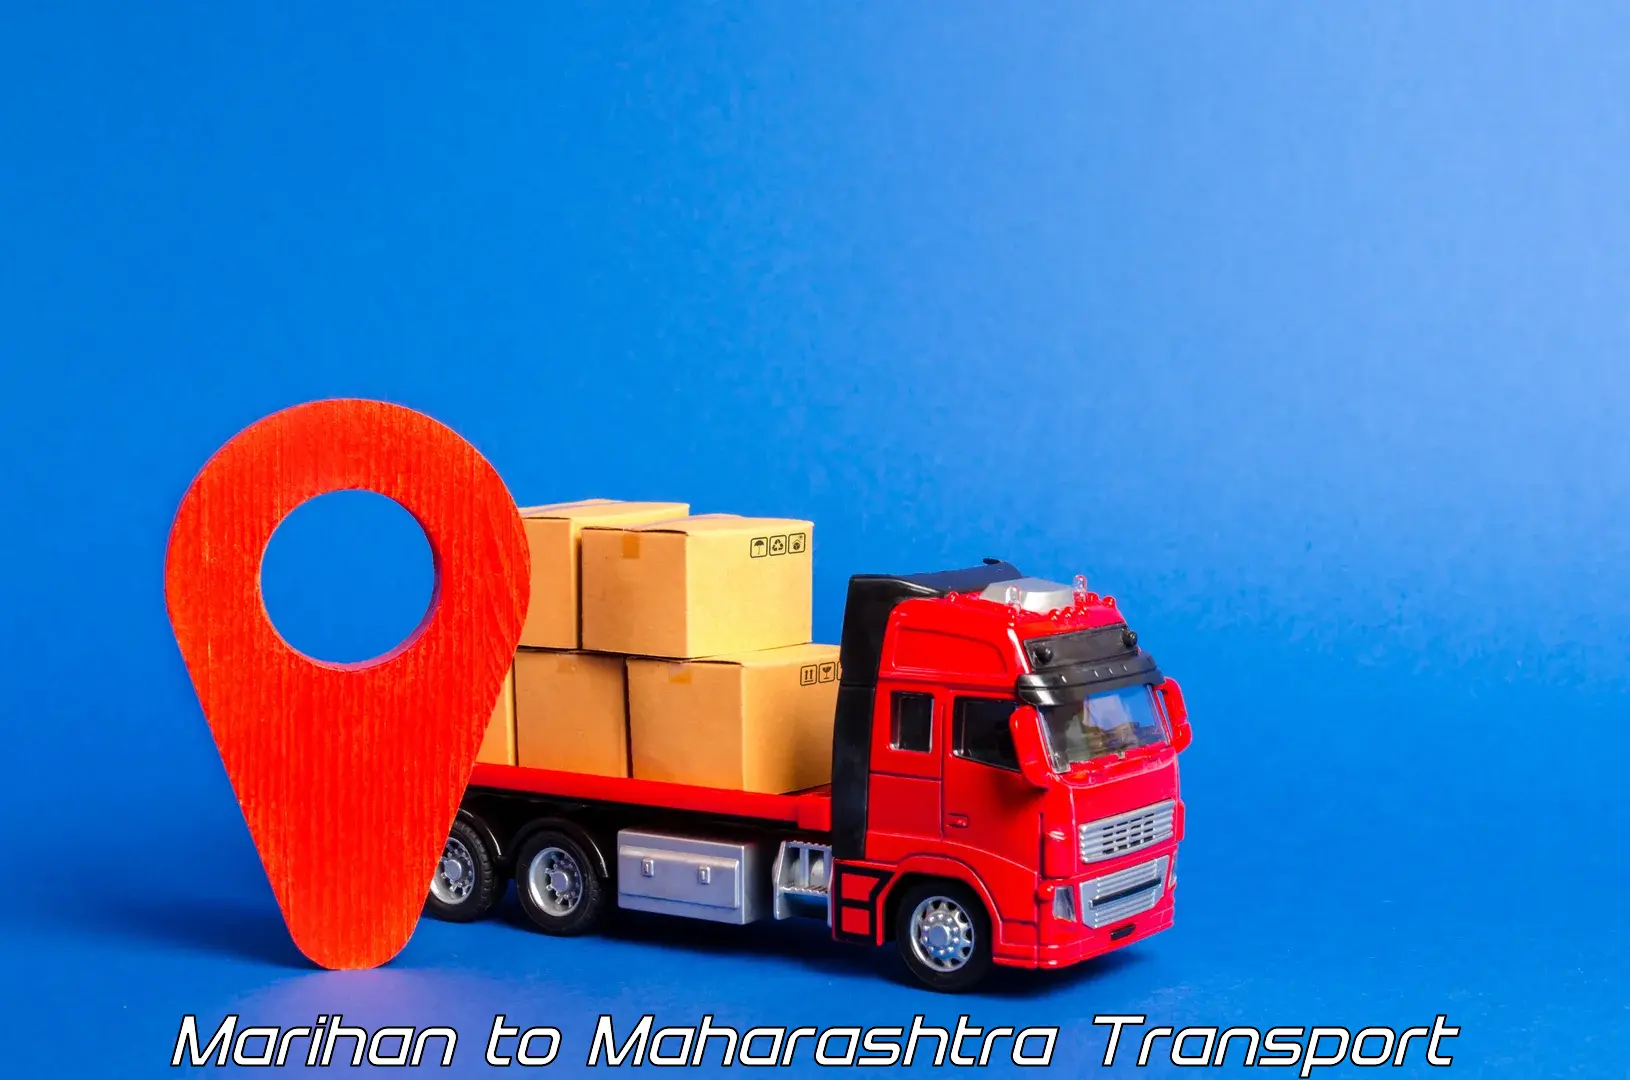 Part load transport service in India Marihan to Raigarh Maharashtra